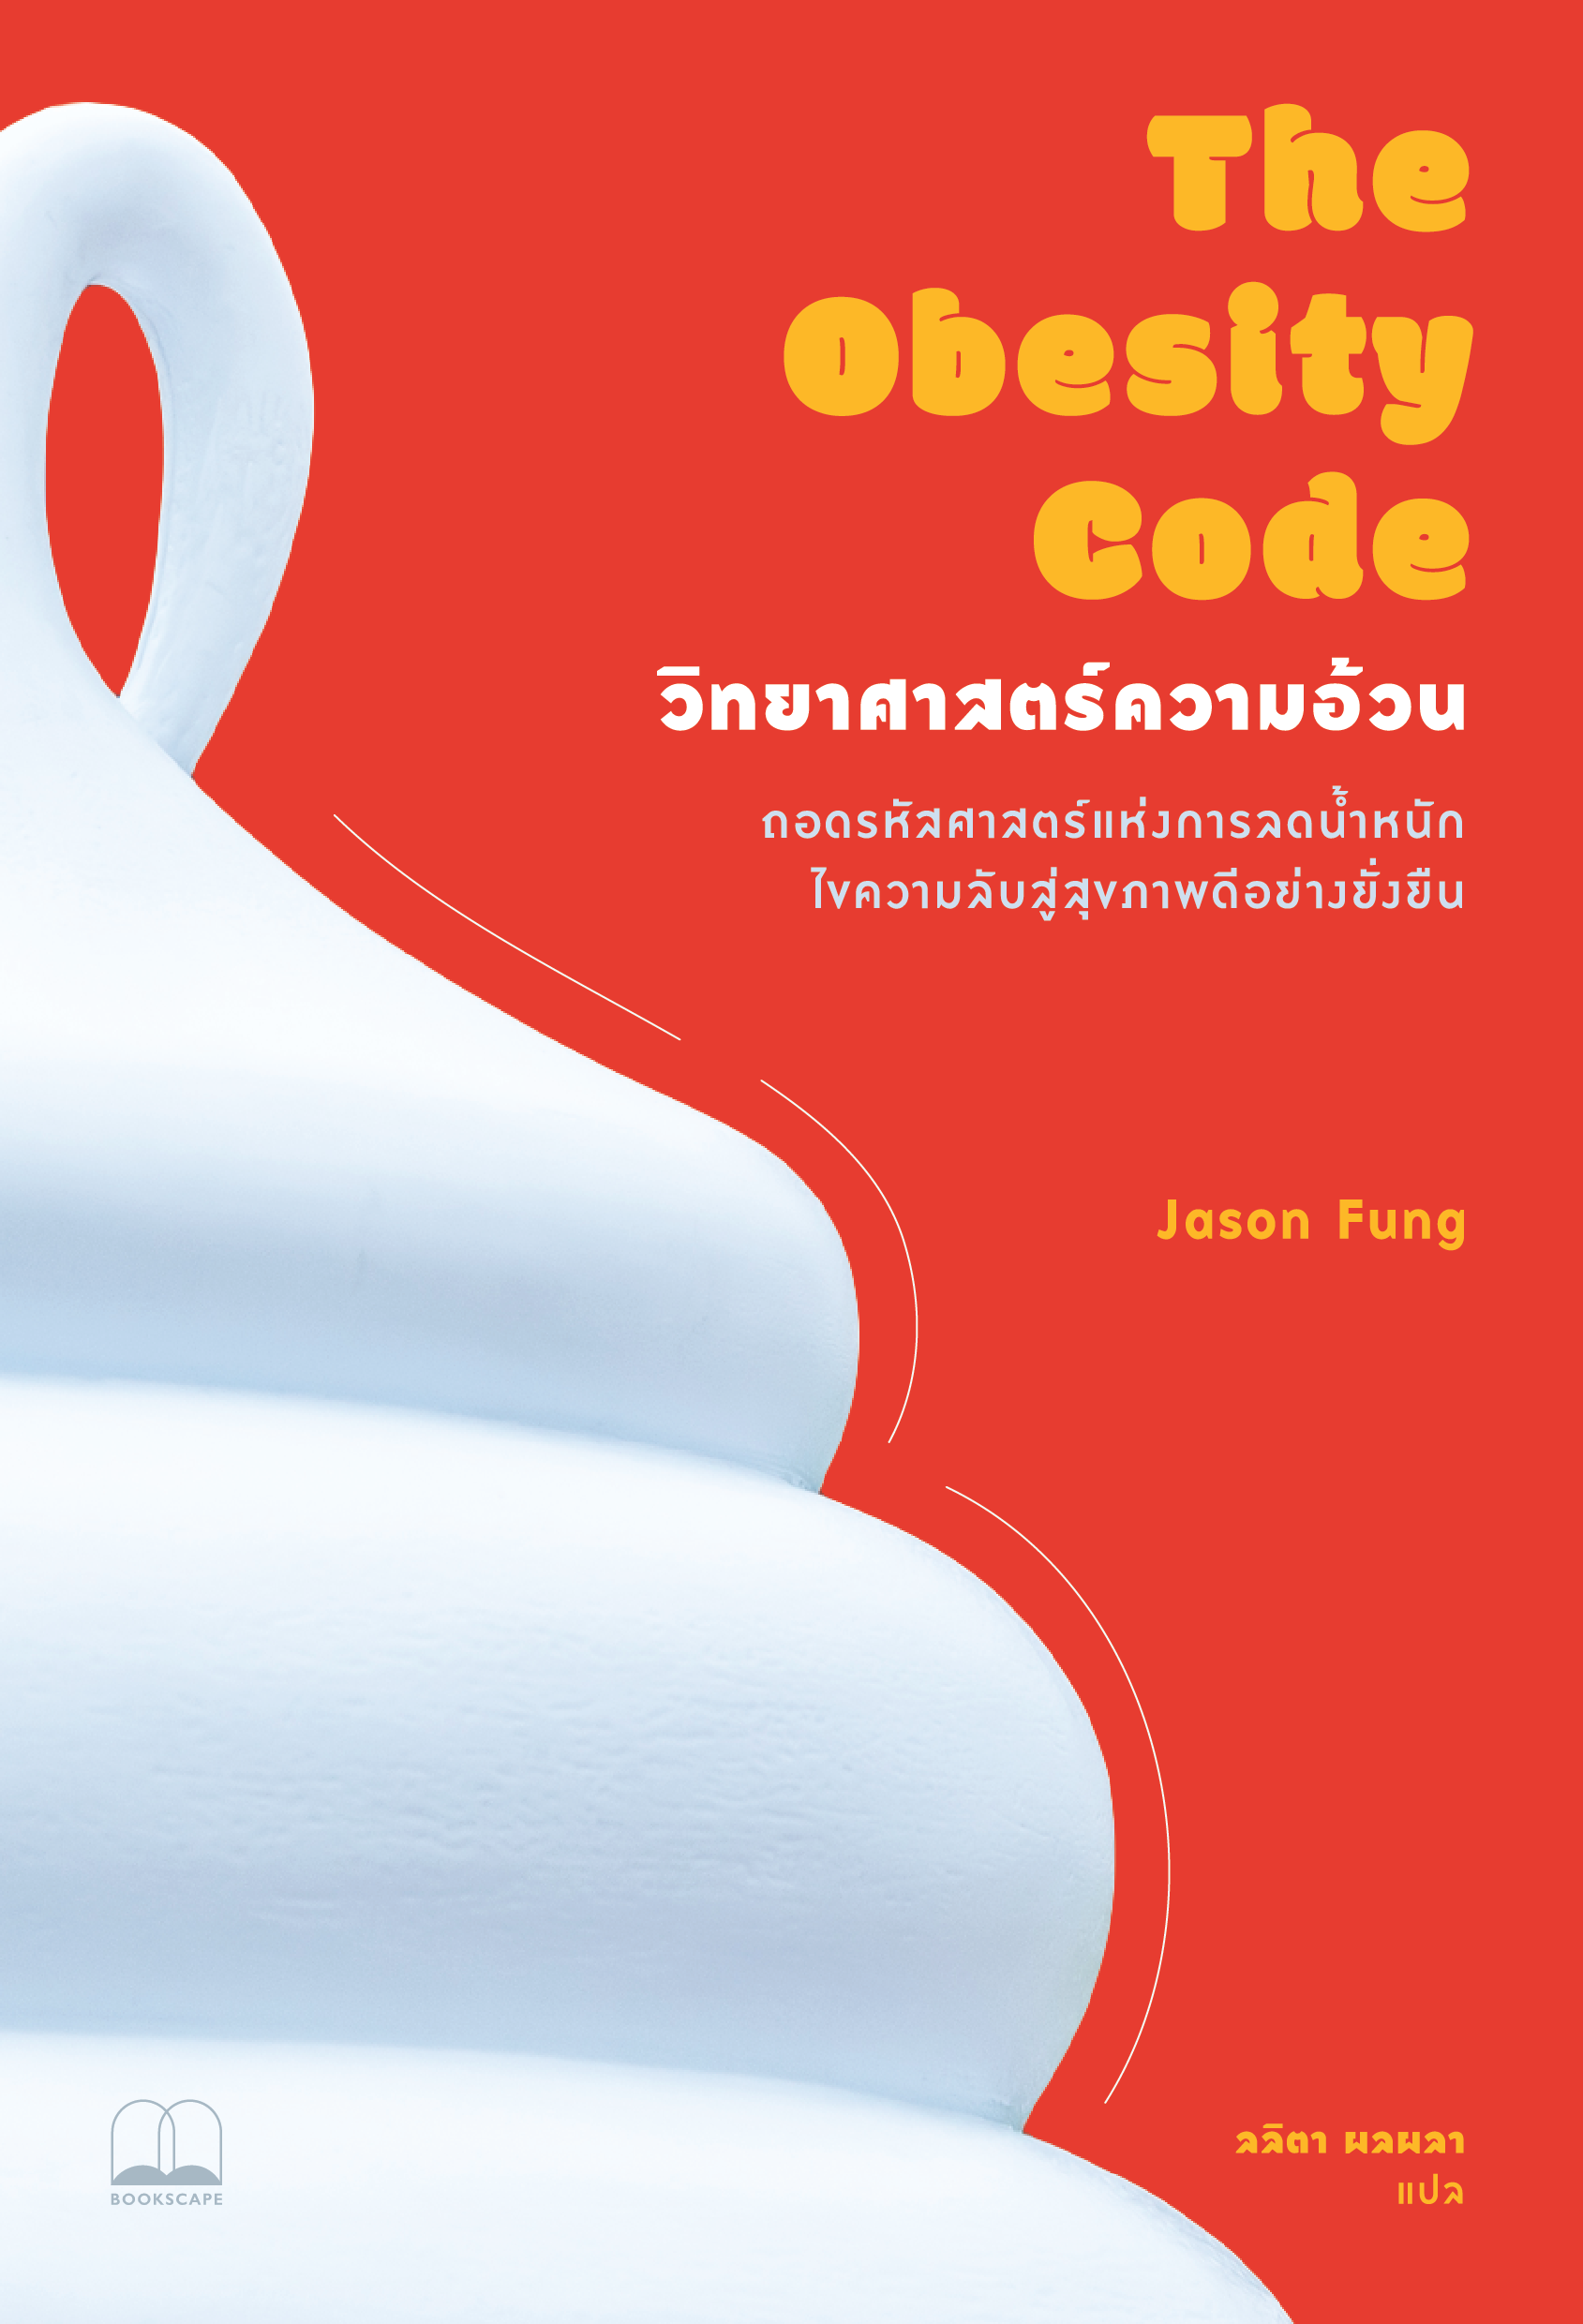 วิทยาศาสตร์ความอ้วน The Obesity Code / Jason Fung เขียน / ลลิตา ผลผลา แปล / Bookscape